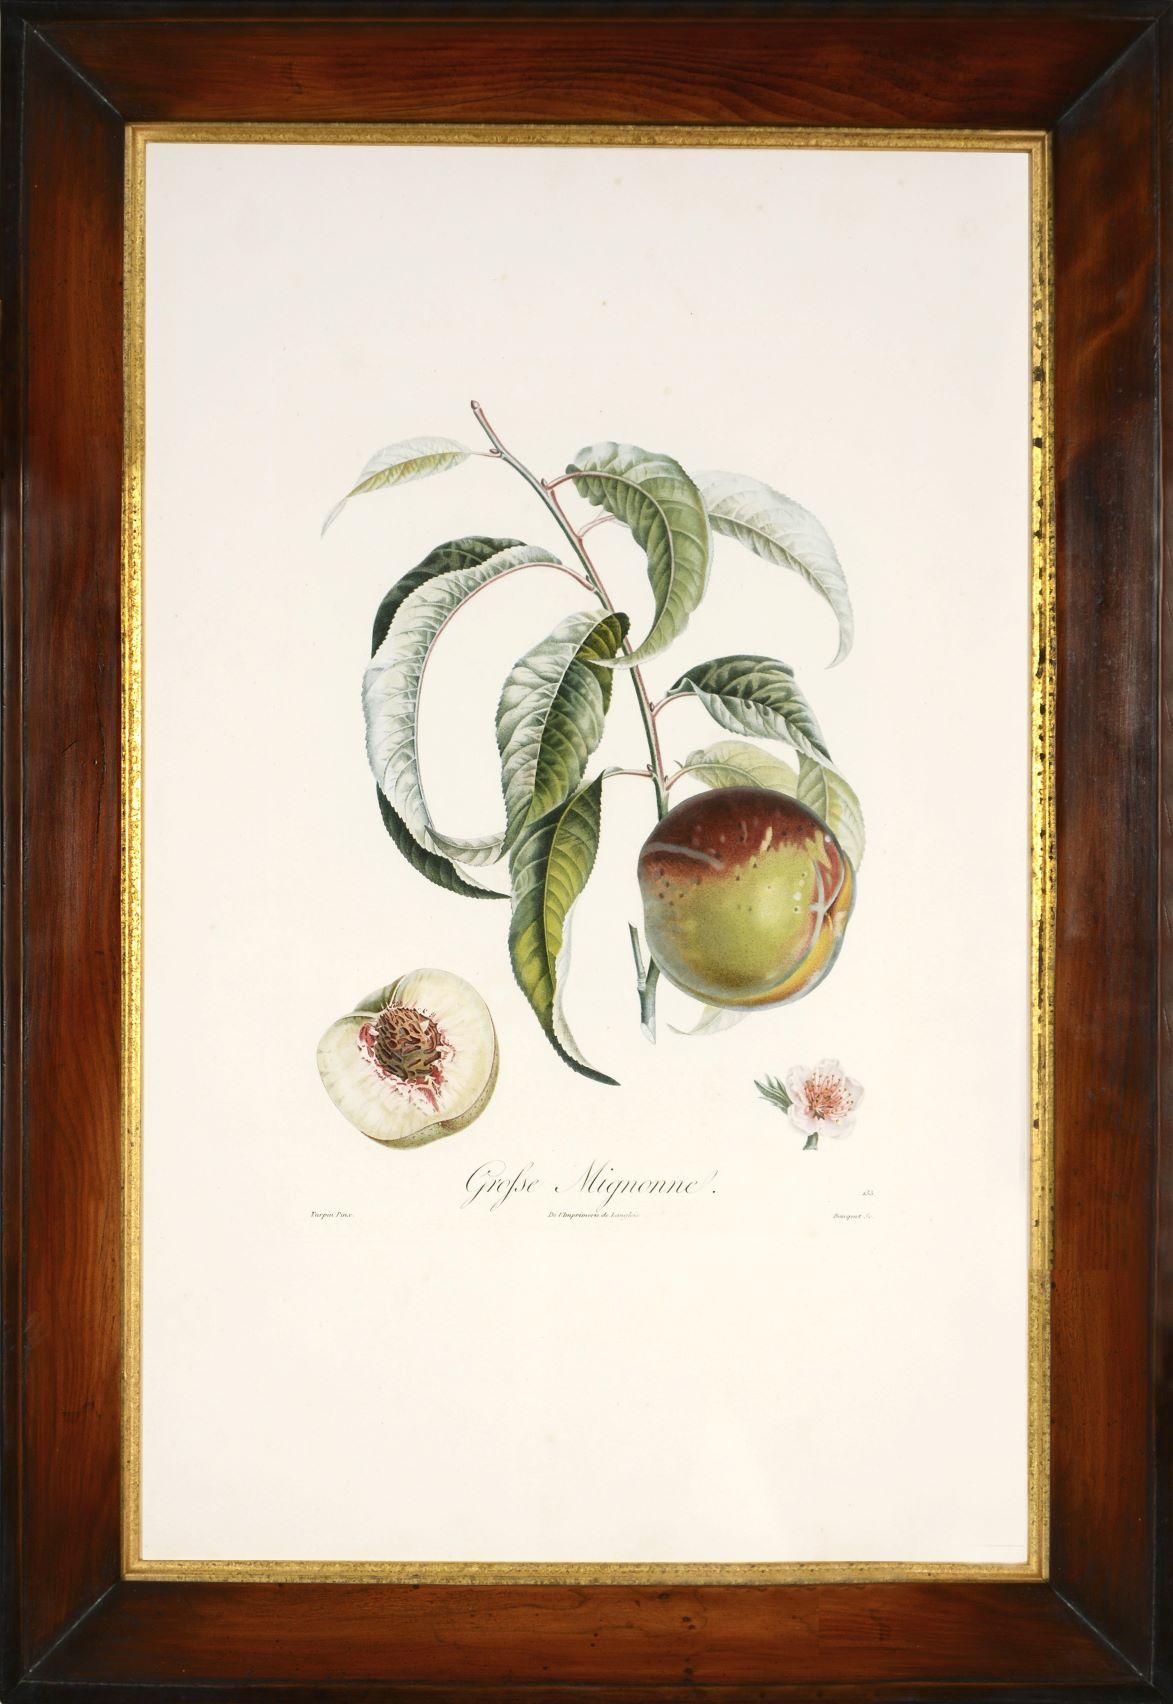 POITEAU/TURPIN. Traité des arbres fruitiers: A Set of Four Peaches - Naturalistic Print by POITEAU, A. and P. TURPIN.   